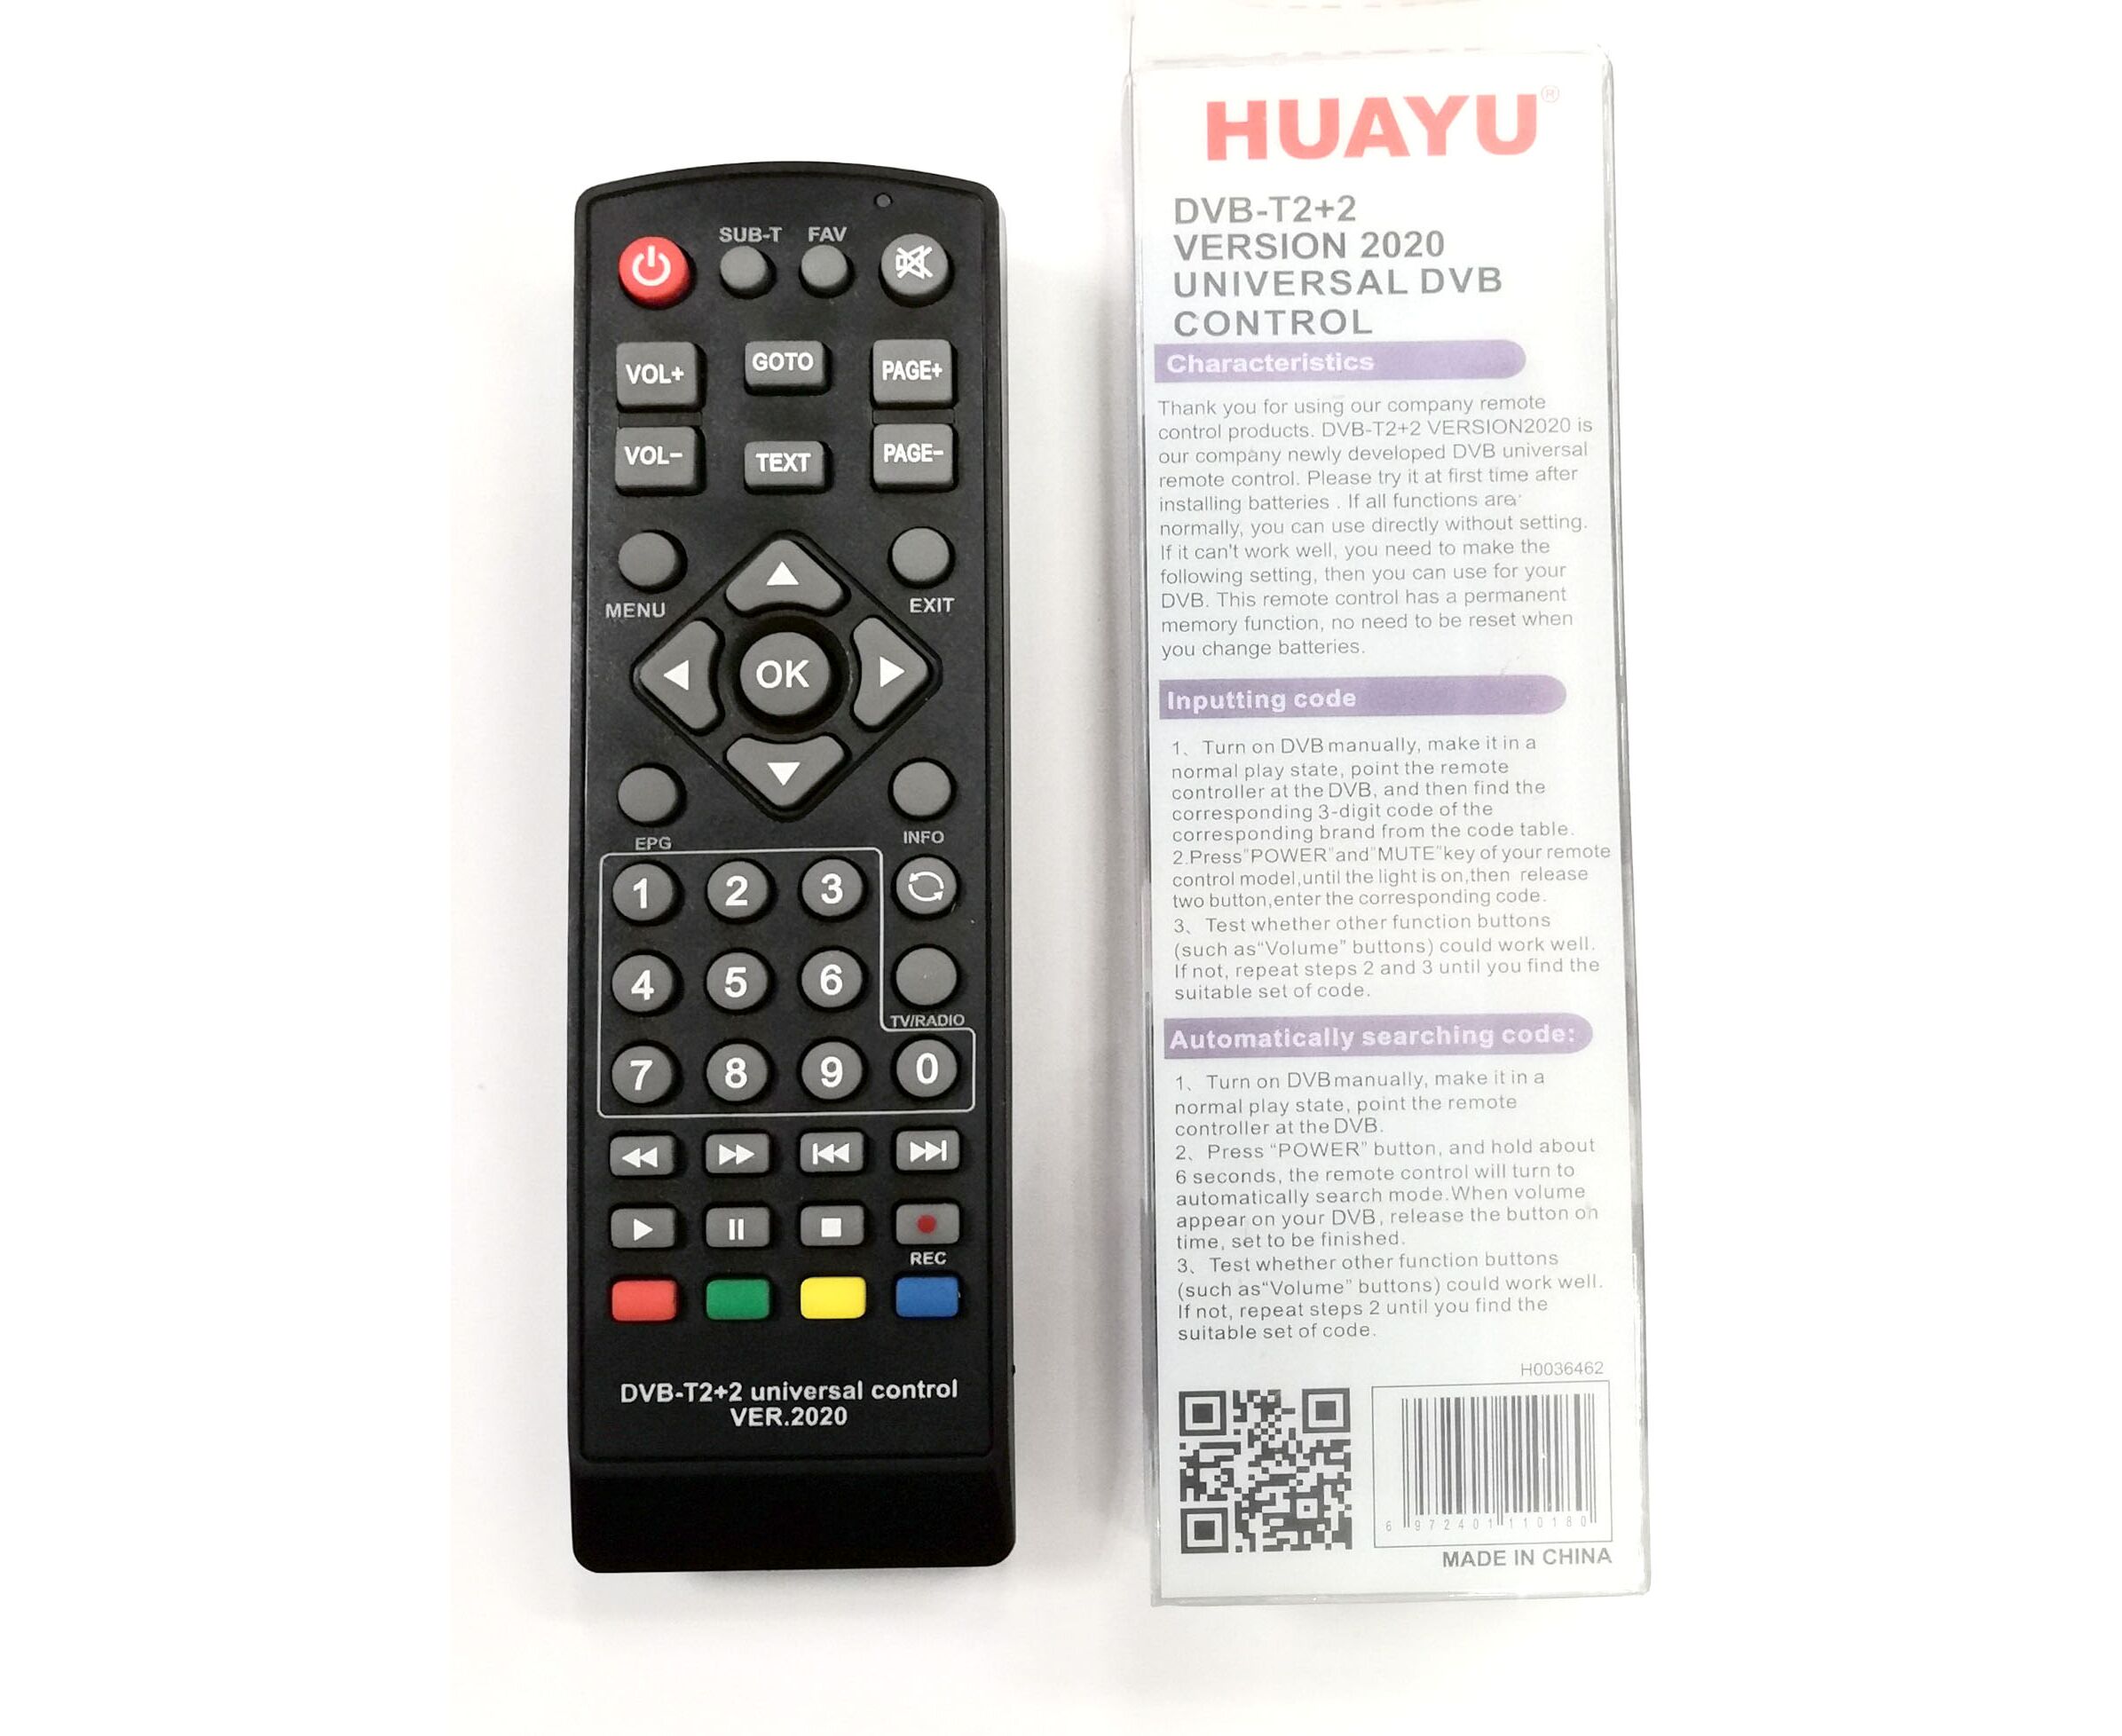 Телевизор код 3. Пульт универсальный Huayu для приставок DVB-t2+2 версия 2020. Универсальный пульт Huayu DVB-t2+t3. Универсальный пульт Huayu DVB-t2+2 ver.2020. Универсальный пульт Huayu DVB-t2+TV ver.2020.